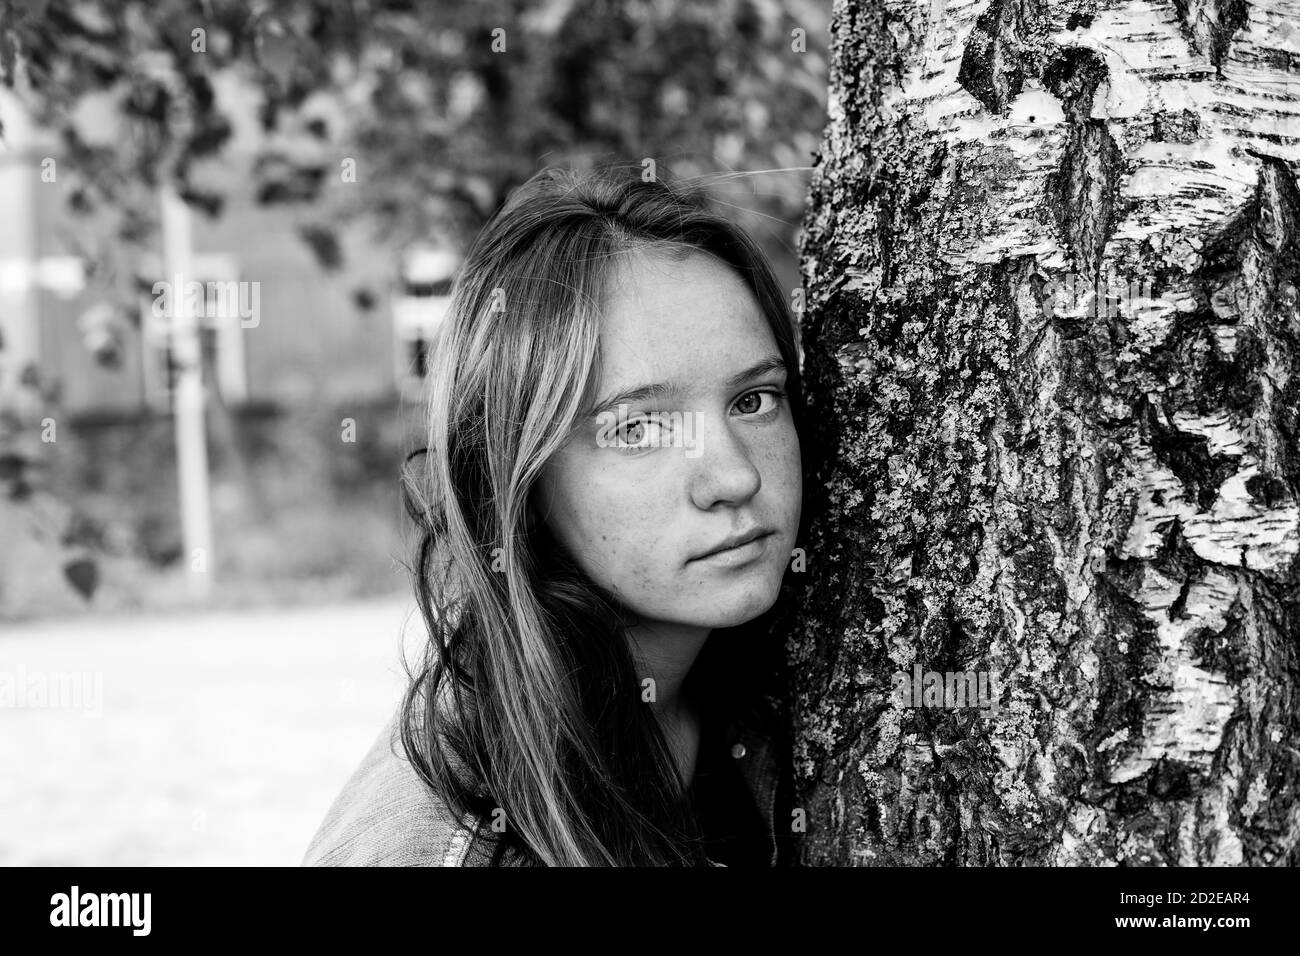 Teen Mädchen mit langen Haaren Porträt in der Nähe des Baumes. Schwarzweiß-Fotografie. Stockfoto